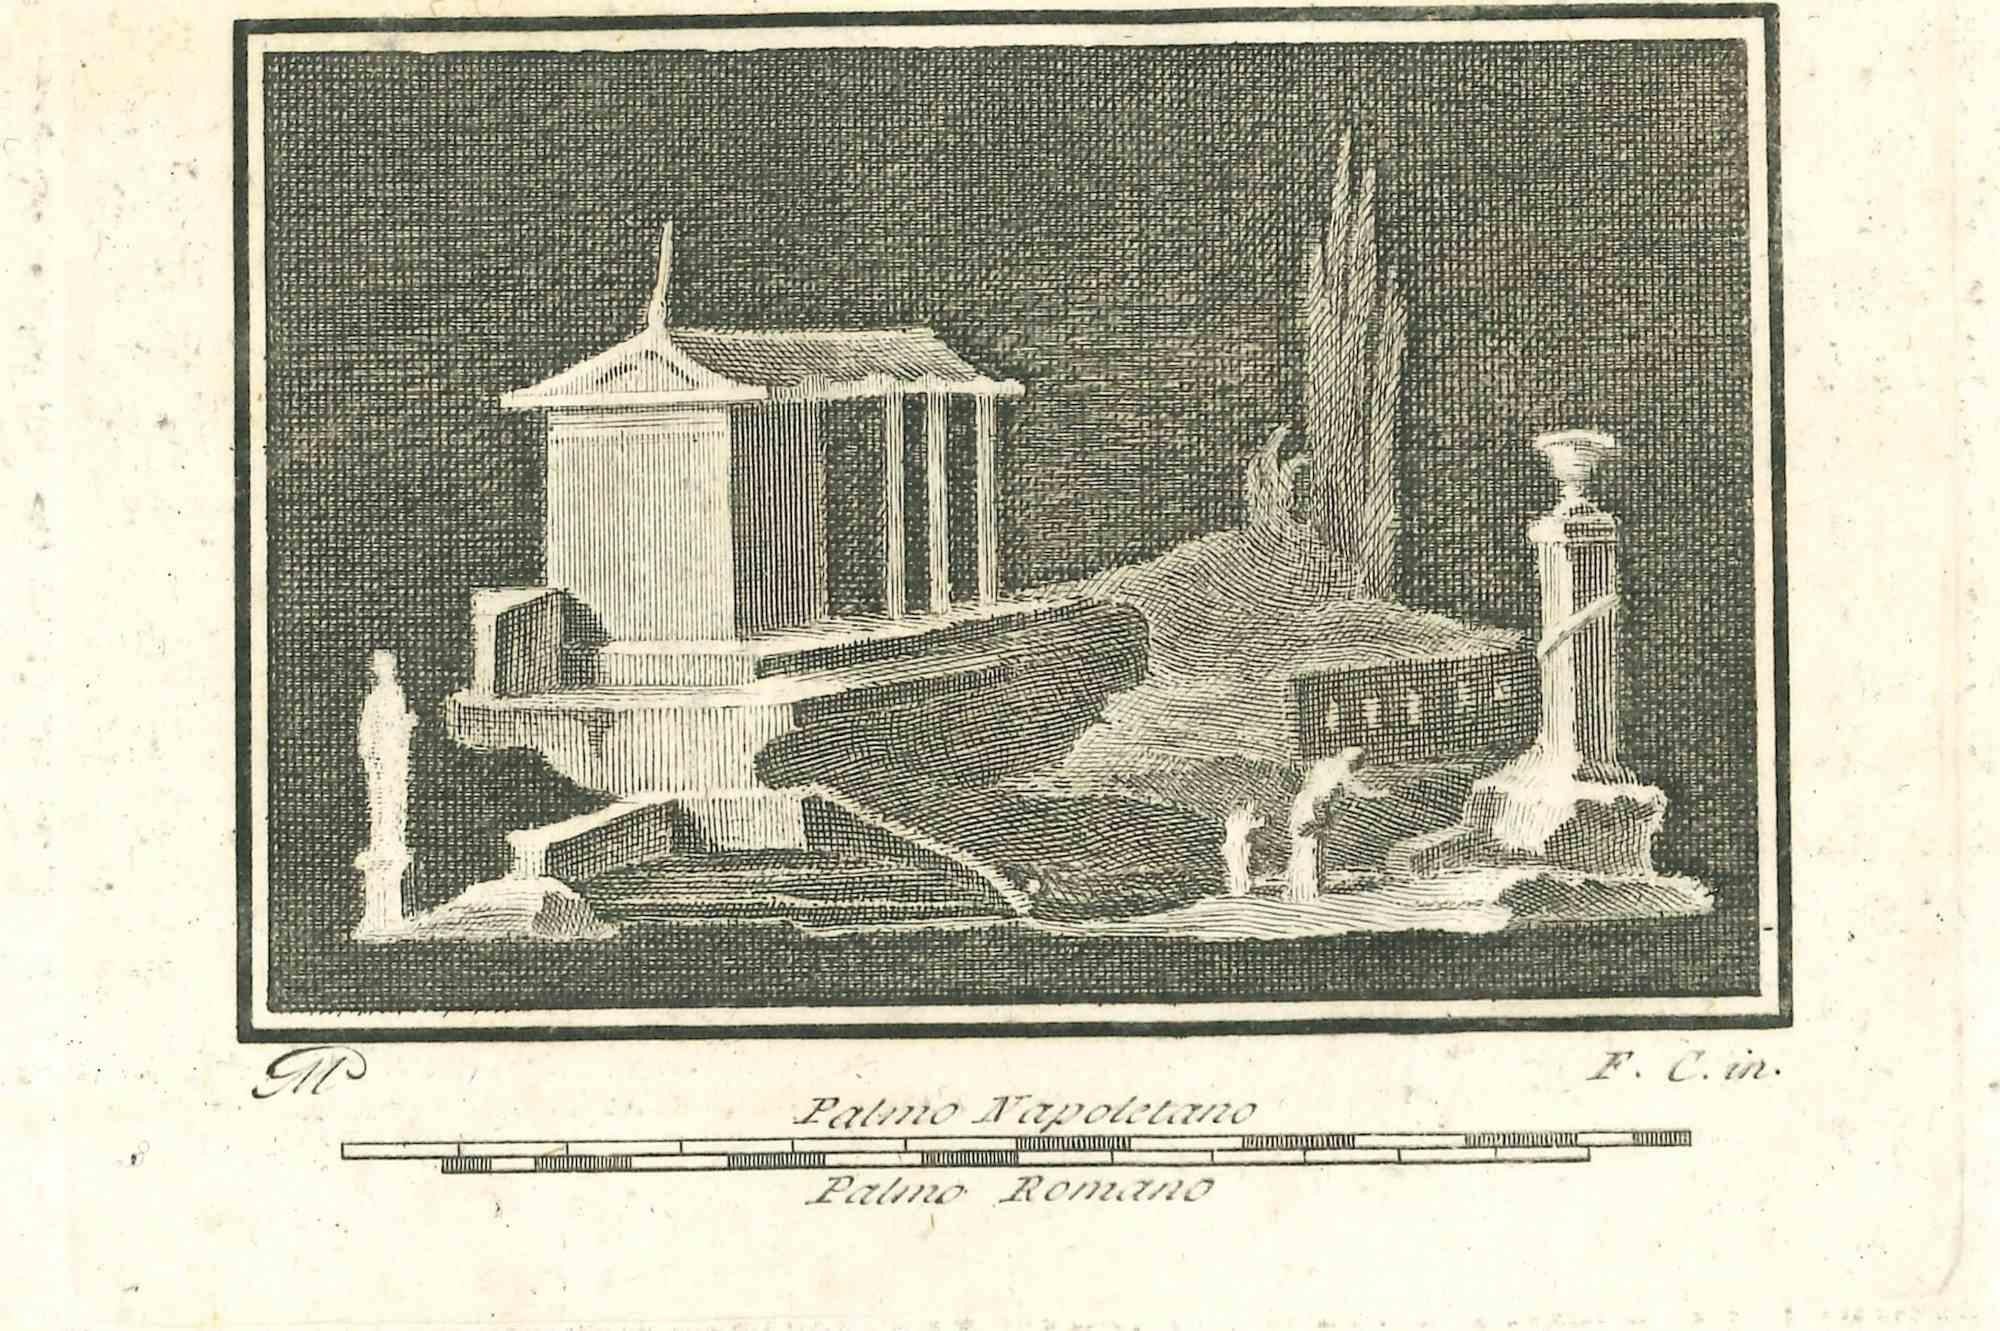 Francesco Cepparuli Figurative Print - Ancient Roman Landscape - Etching - 18th Century